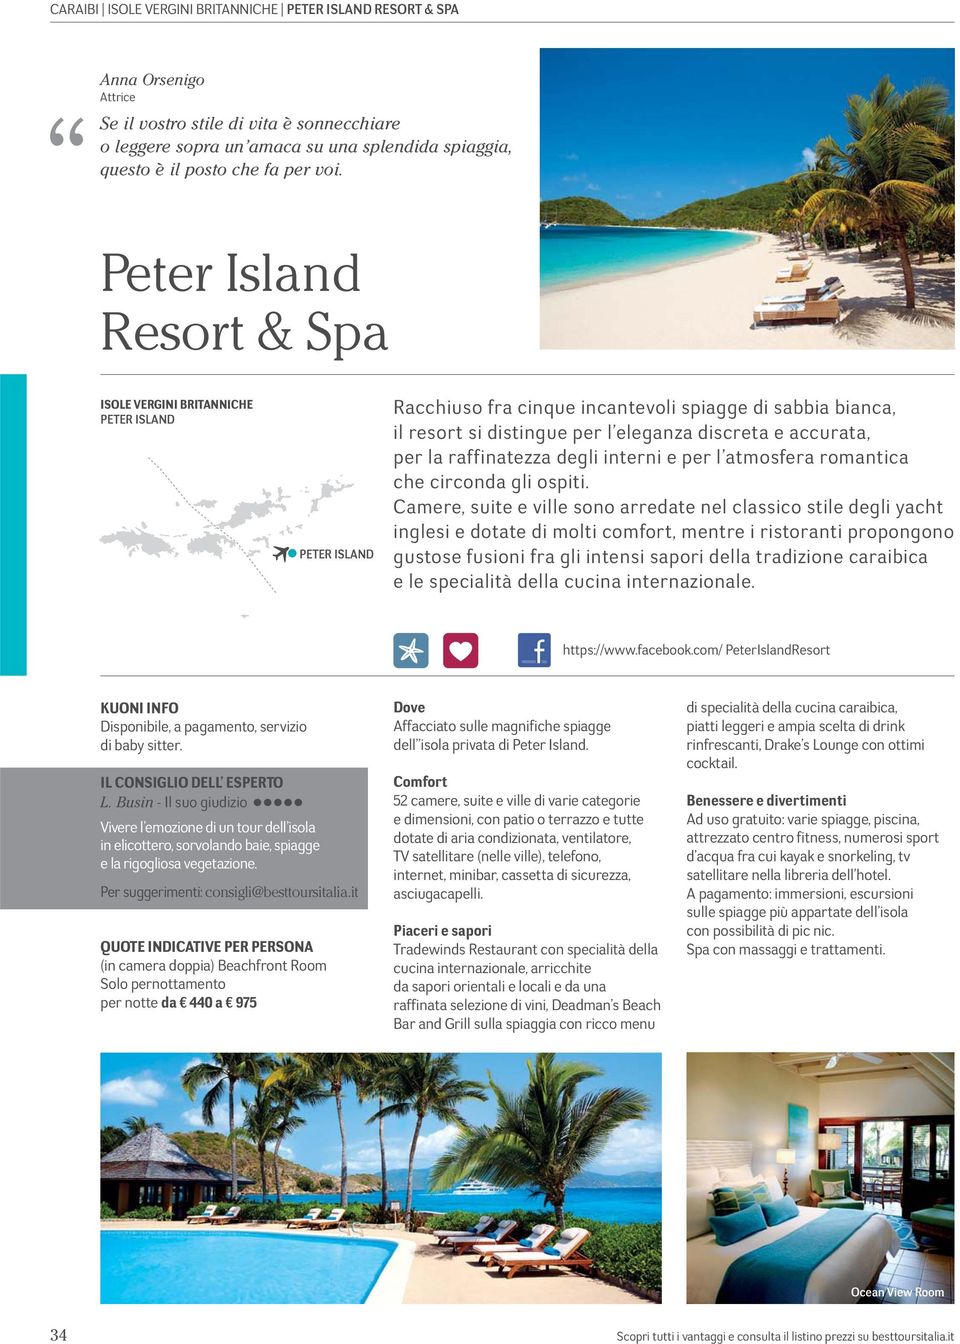 Peter Island Resort & Spa ISOLE VERGINI BRITANNICHE PETER ISLAND PETER ISLAND Racchiuso fra cinque incantevoli spiagge di sabbia bianca, il resort si distingue per l eleganza discreta e accurata, per